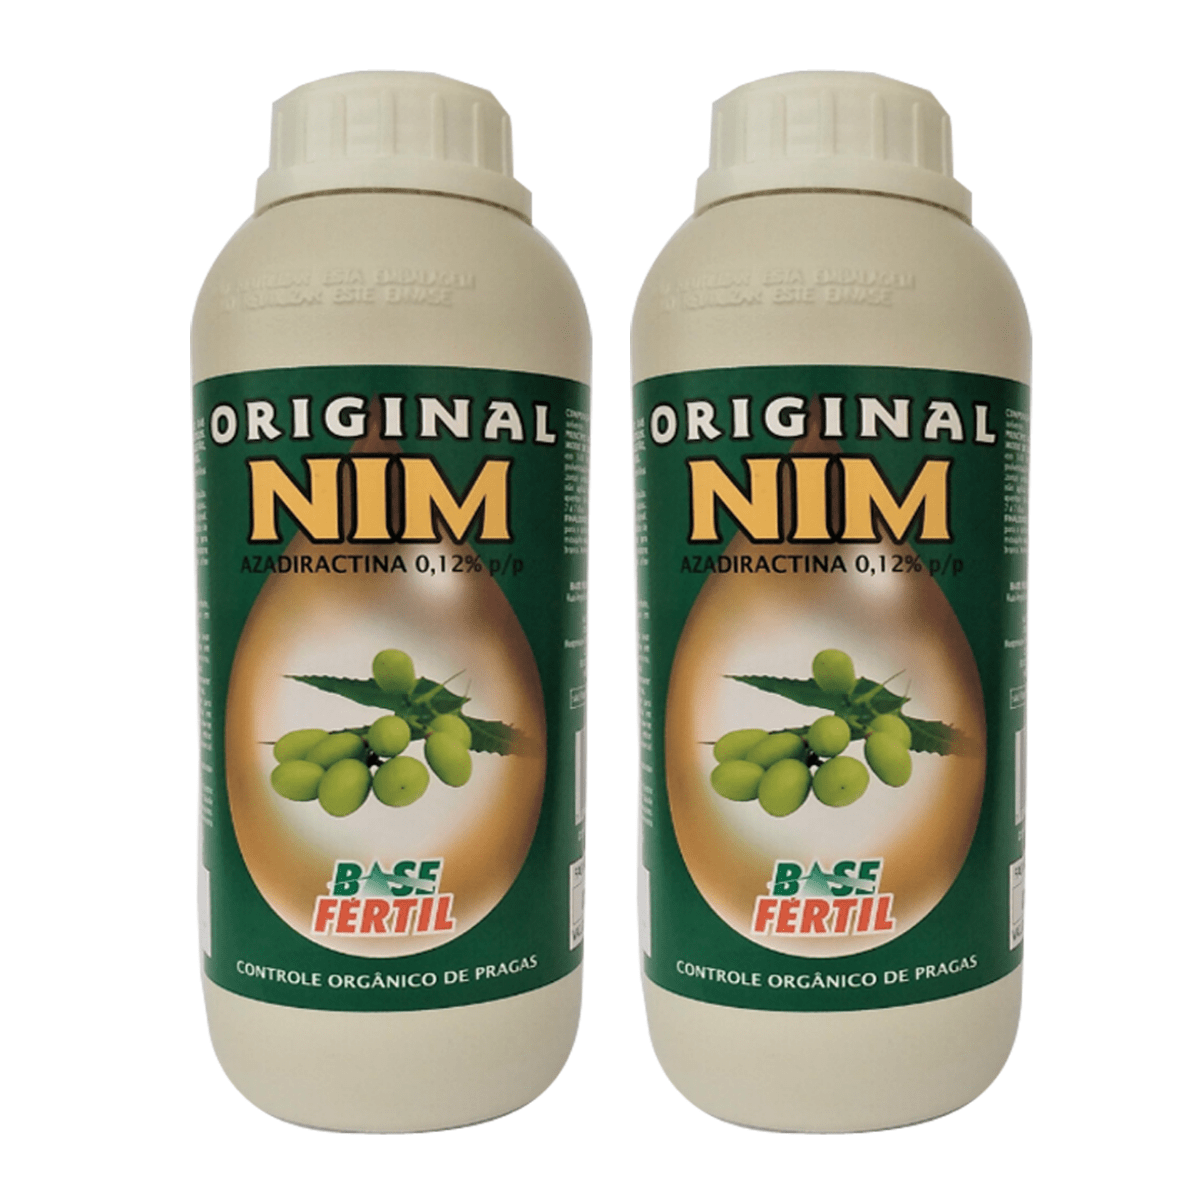 Original Nim (ÓLEO DE NIM) - KIT c/ 2 LITROS